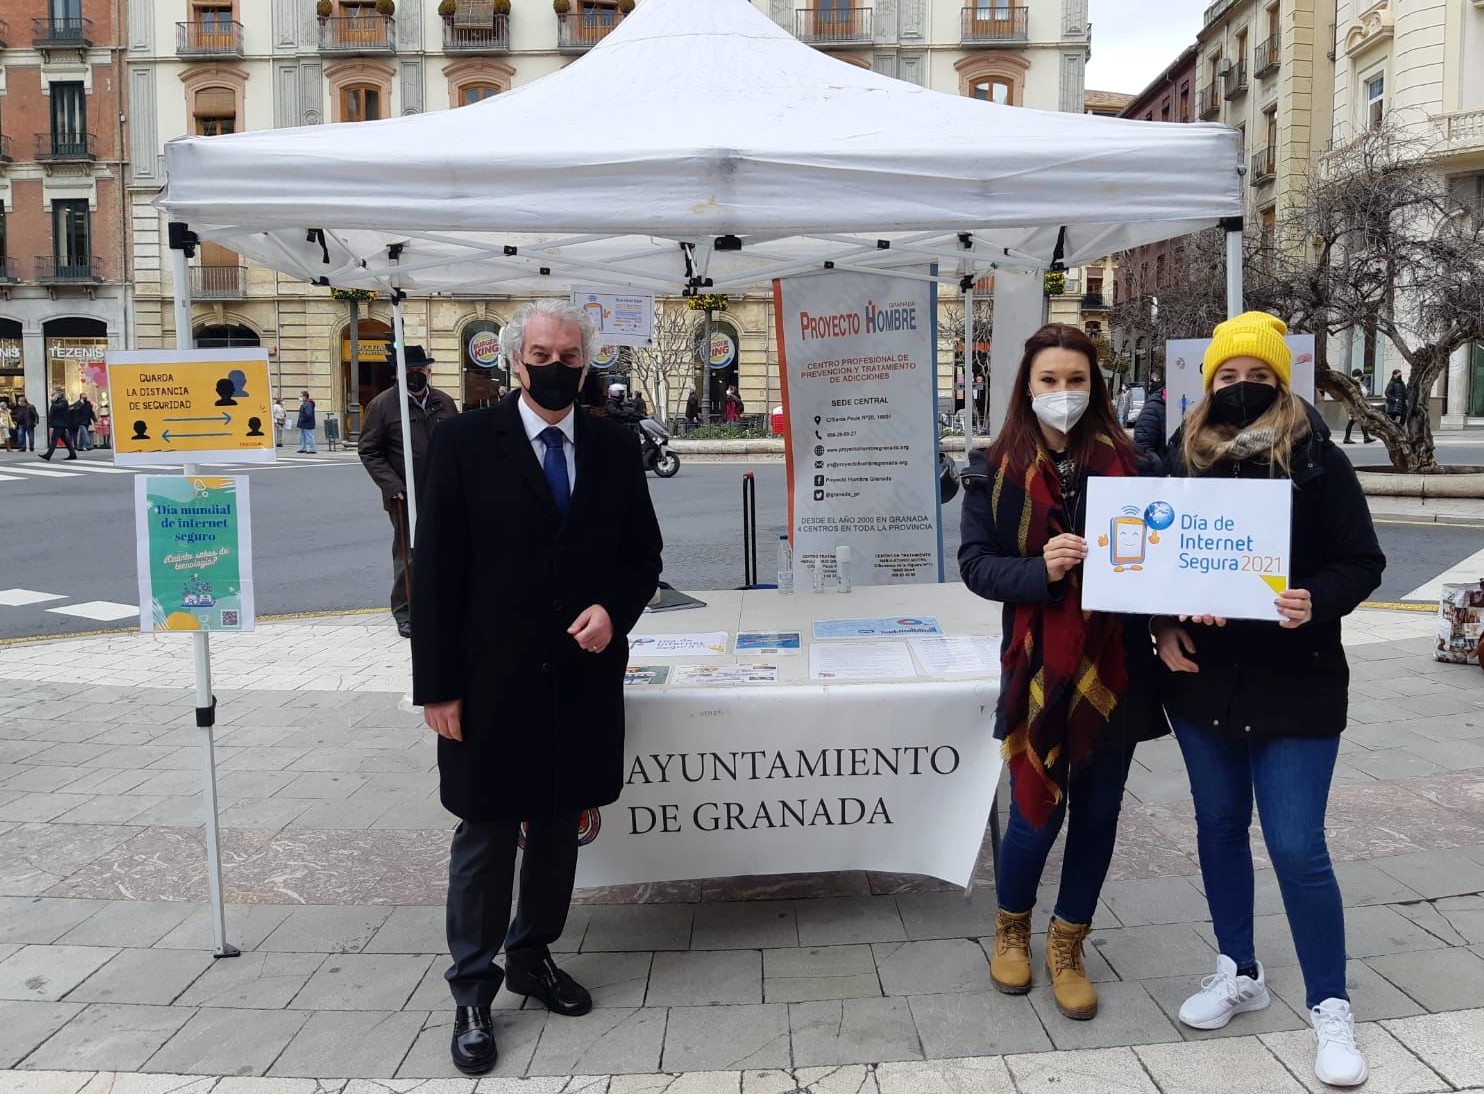 El Ayuntamiento instala una carpa en Puerta Real con motivo del Día internacional de Internet seguro